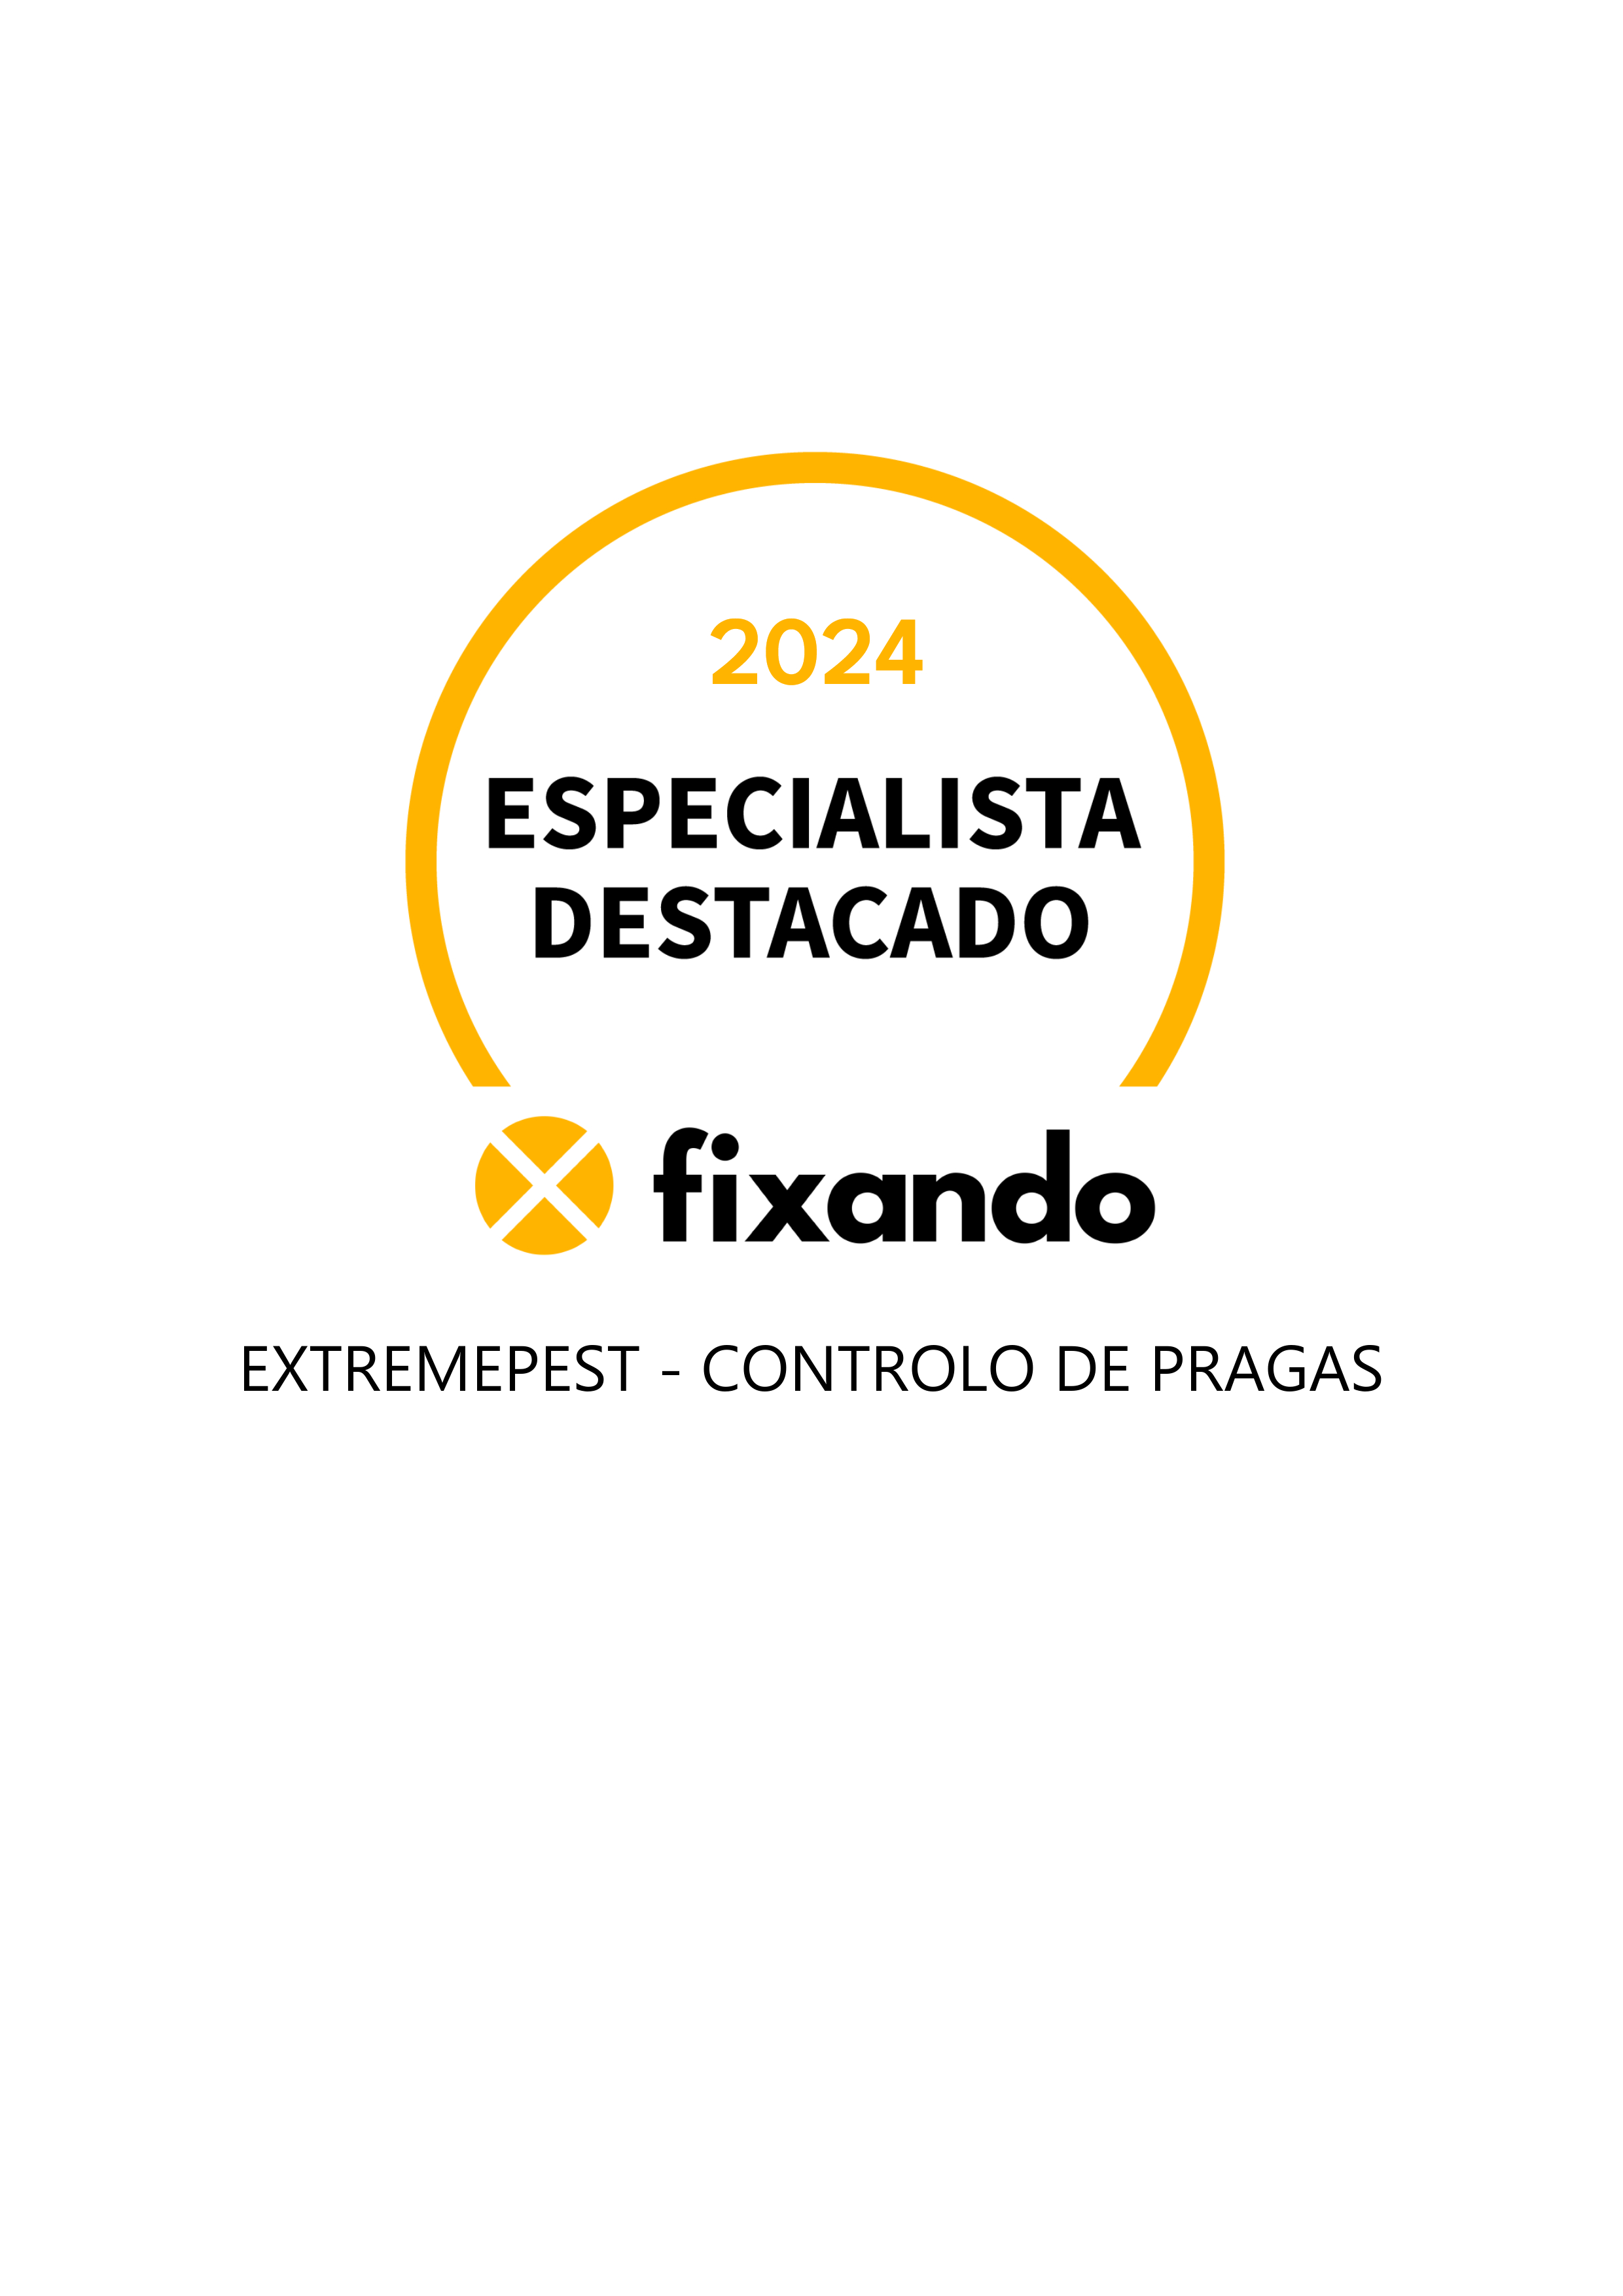 ExtremePest - Controlo de Pragas - Santarém - Desinfestação e Desbaratização